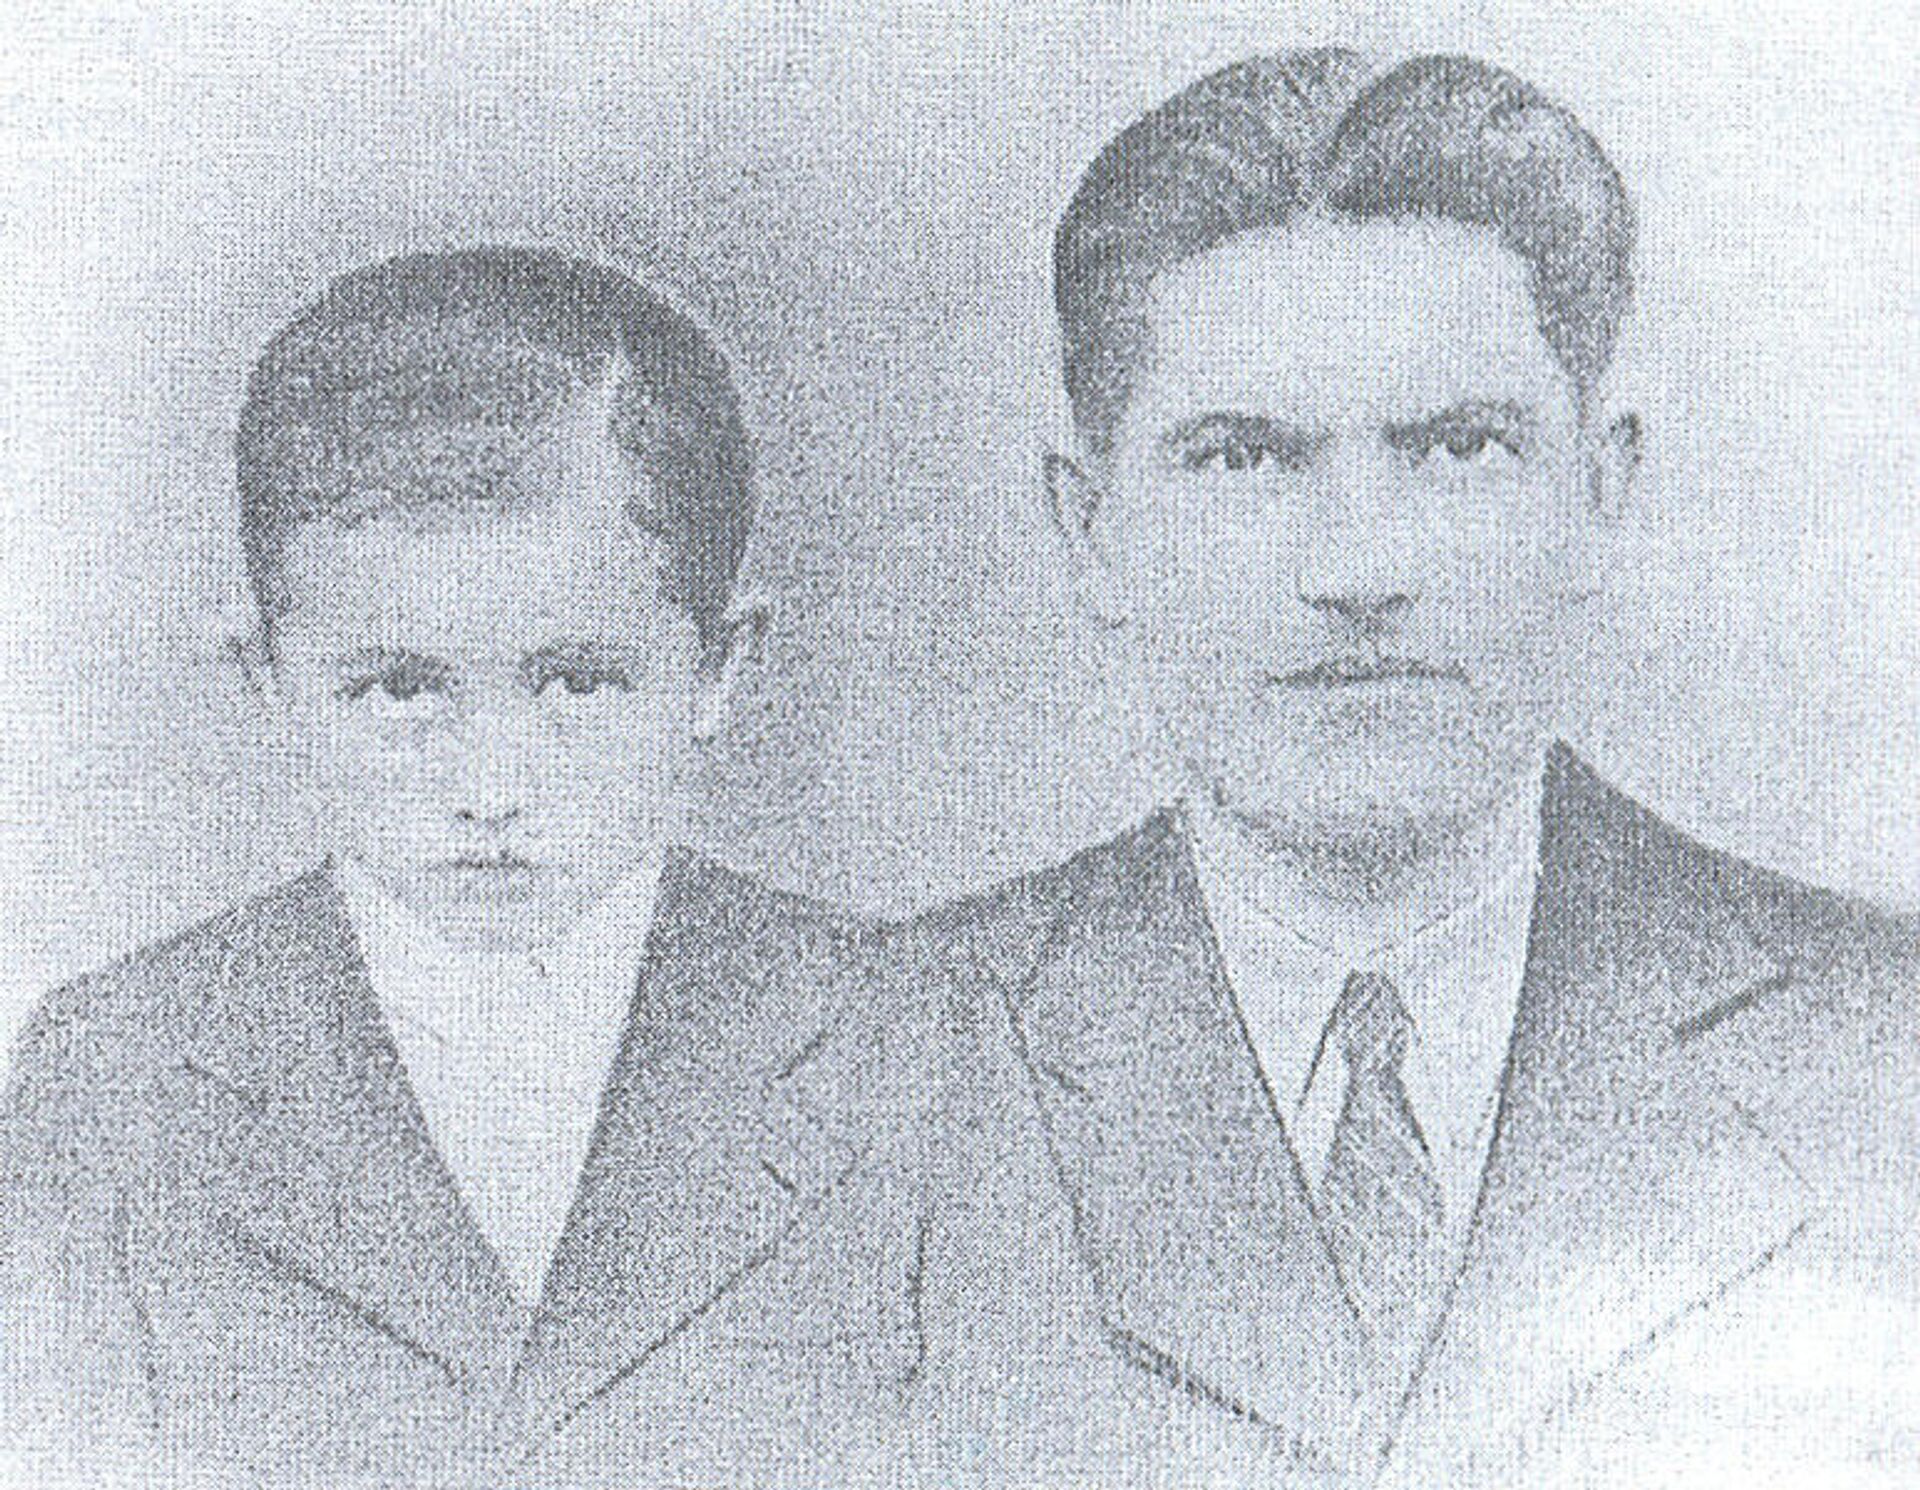 Počuča Mile, ubijen 1941. i njegov sin Rade, zaklan 1942. - Sputnik Srbija, 1920, 23.10.2021